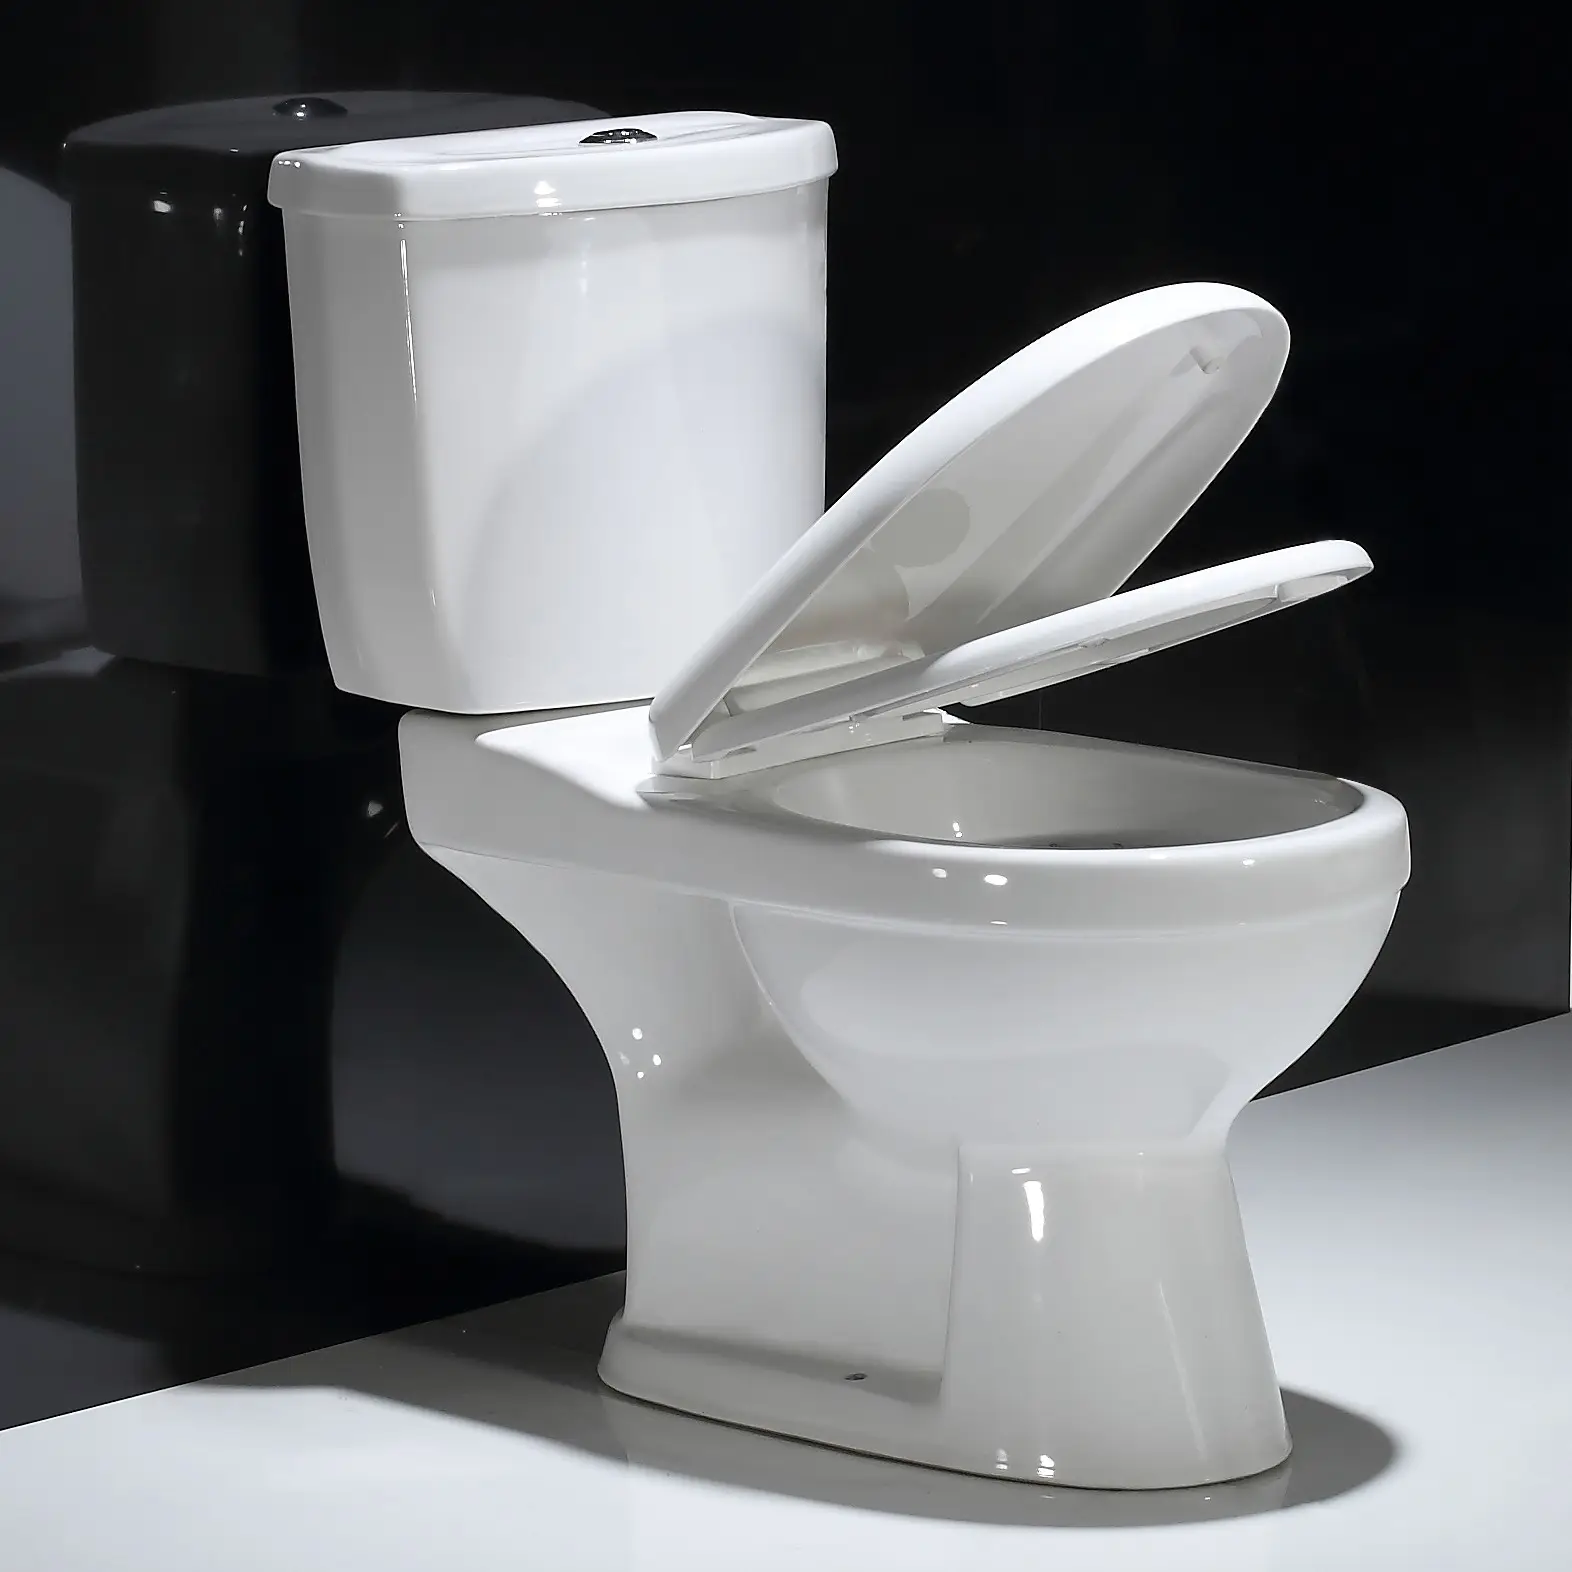 Keramik zweiteilige Toilette Verlangsamen Sie den Sitz bezug zweiteilig wc Parma zweiteilige Toilette Export nach Afrika